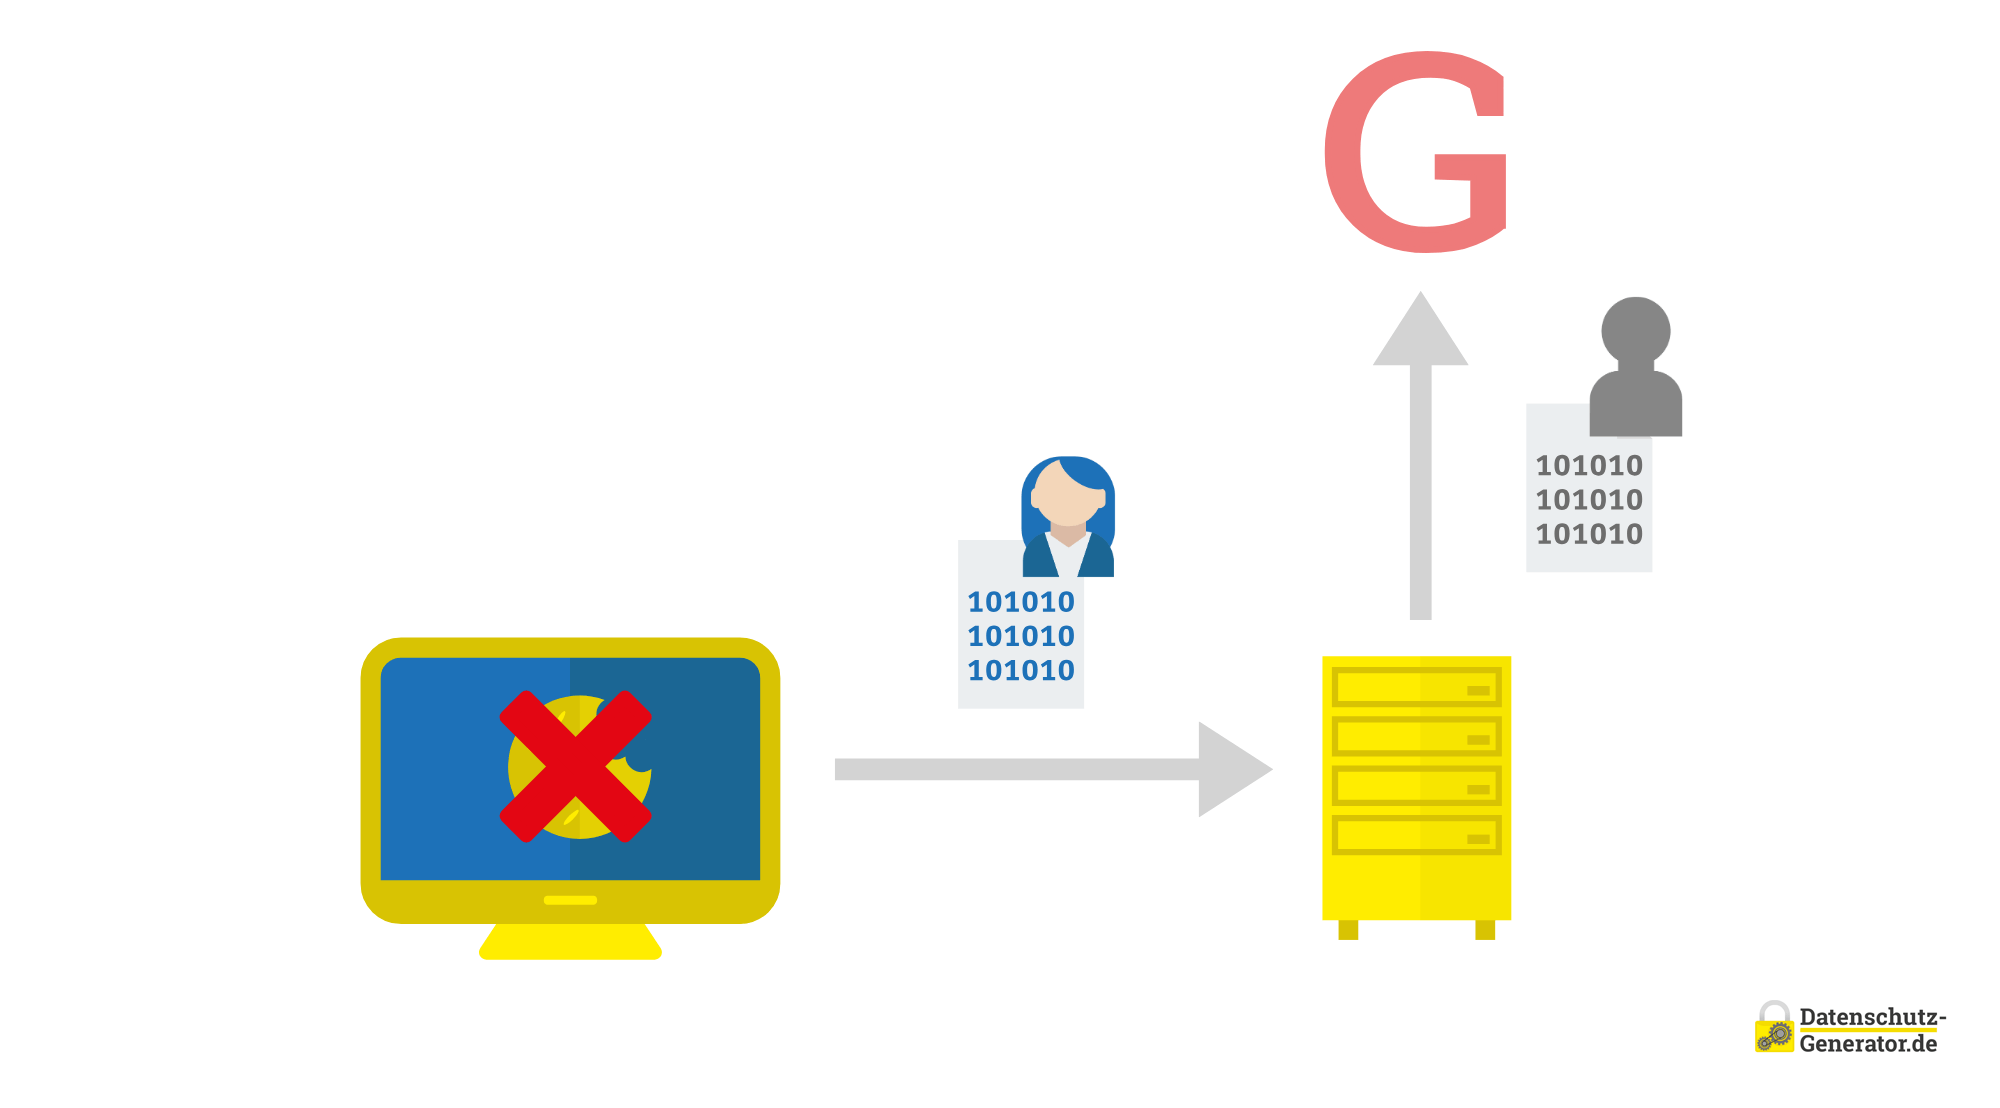 Schematische Darstellung des Consent-Modes für serverseitiges Tracking, wobei Daten von einem User-Icon mit Binärcode und Ja-Nein-Option über einen grauen Pfeil zu einem gelben Server-Schrank fließen, mit einem roten 'G' oben rechts. 'Ja' ist grün und 'nein' rot unterlegt.